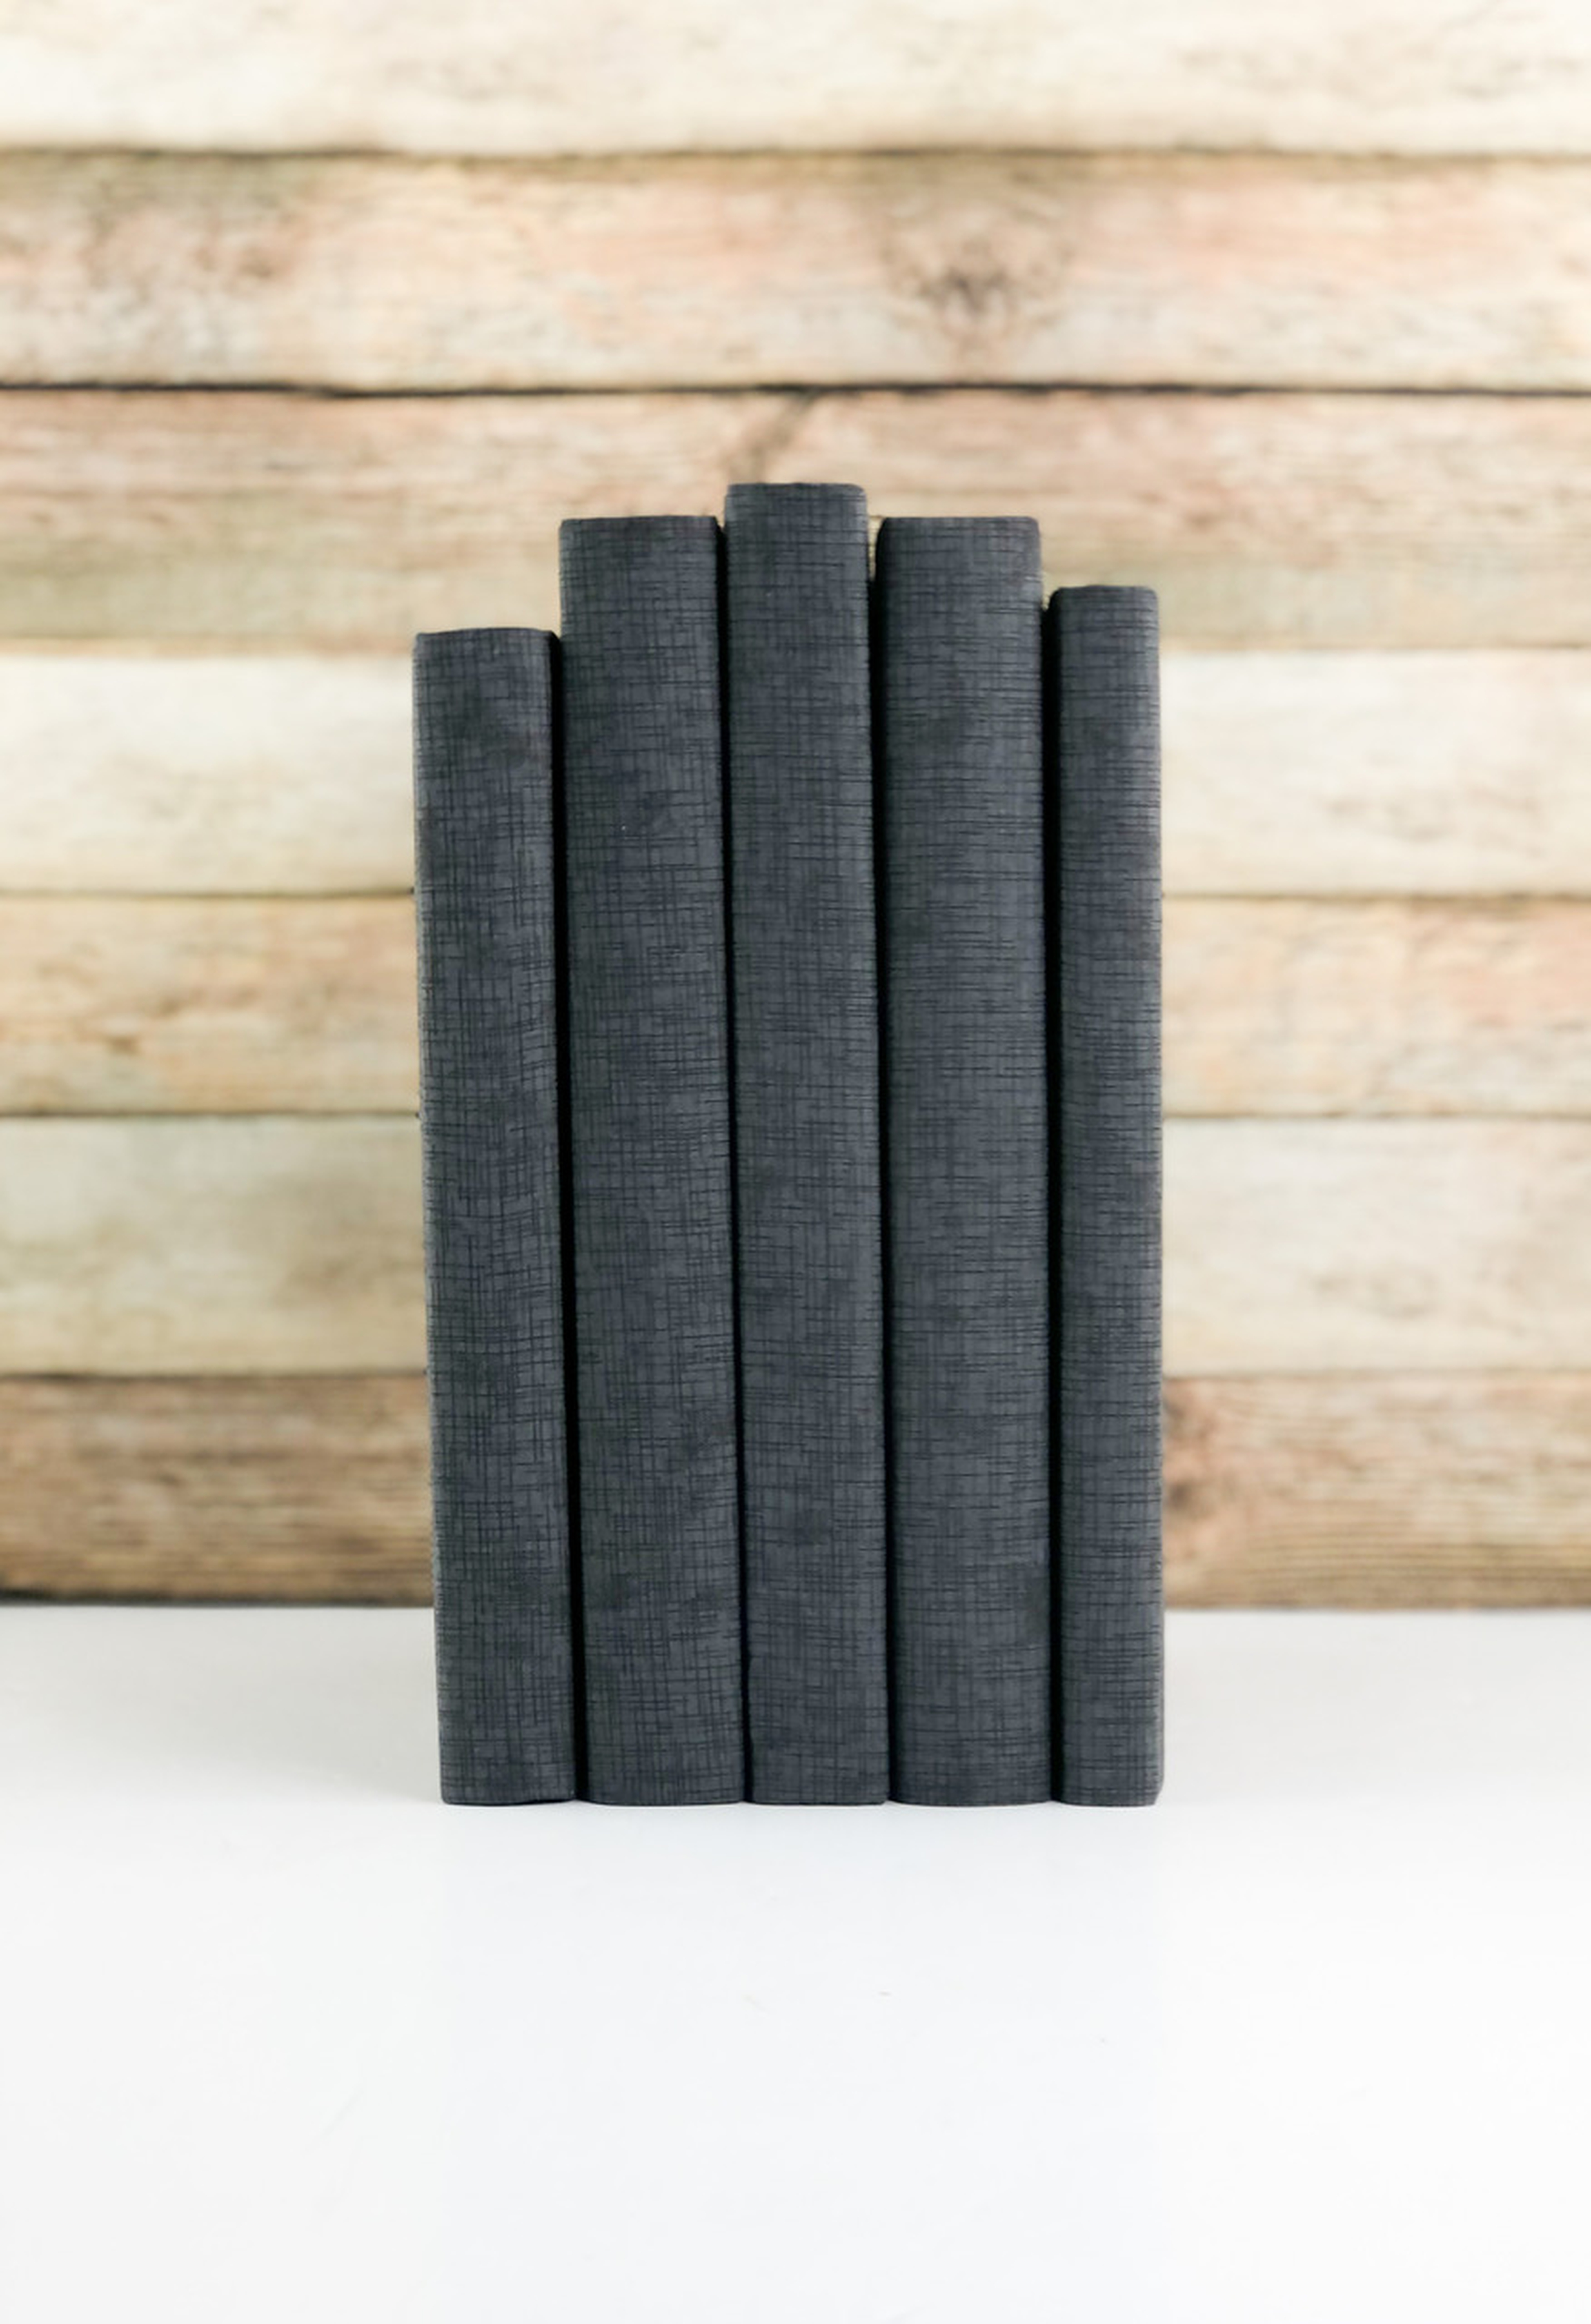 Decorative Books, Textured Dark Gray, Set of 5 - Havenly Essentials